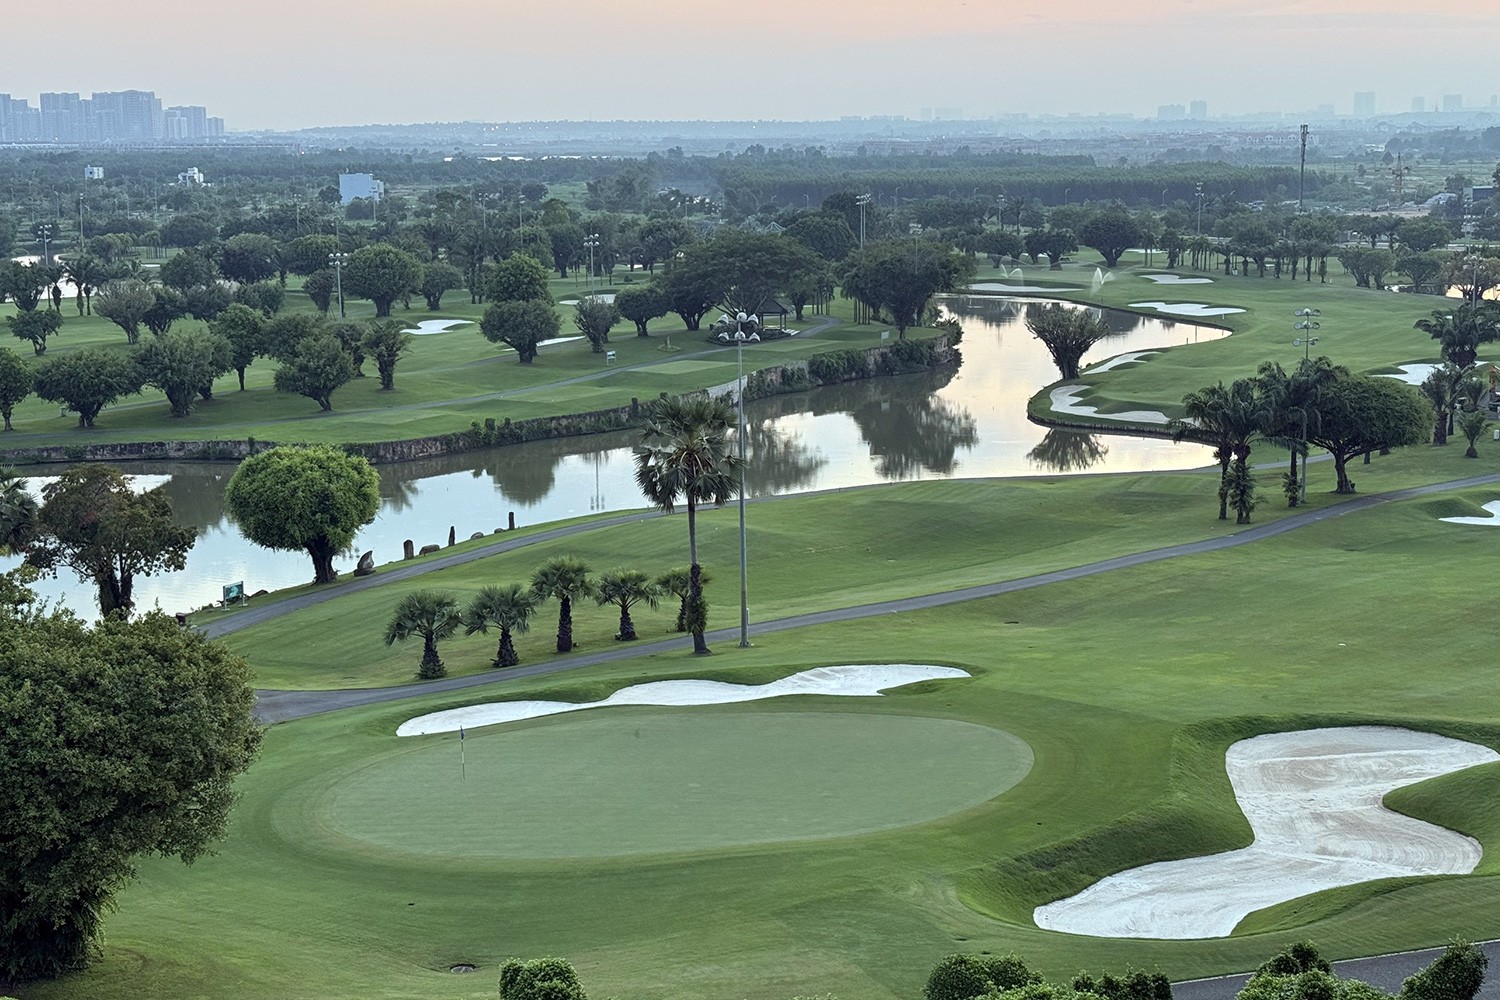 
Sân golf Long Thành hiện đang là sân golf lớn nhất cả nước (Ảnh: An Bình - TTO)
